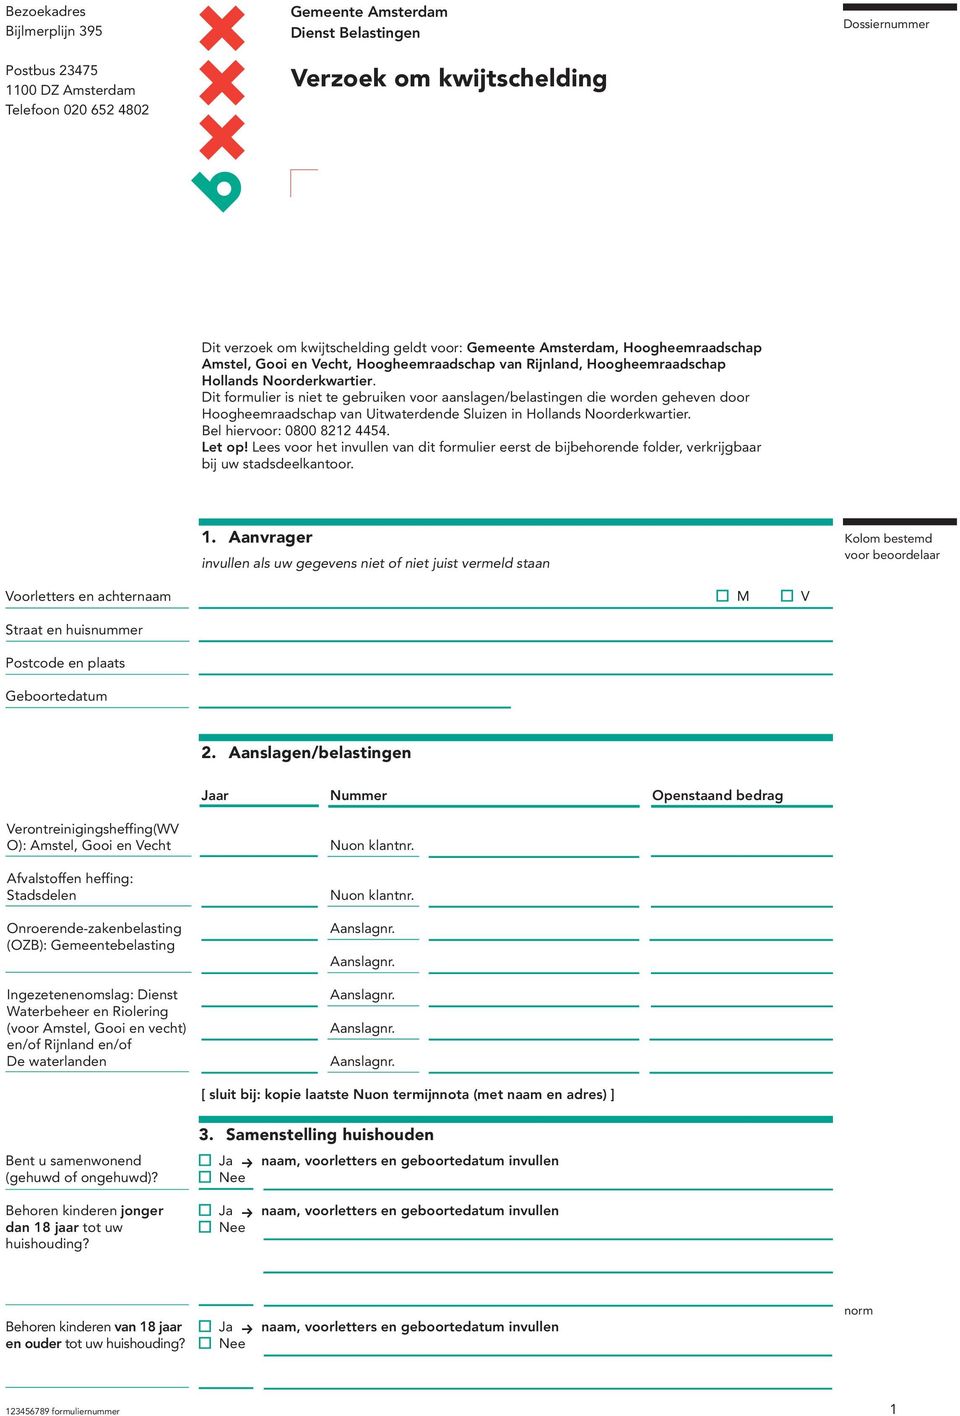 Dit formulier is niet te gebruiken voor aanslagen/belastingen die worden geheven door Hoogheemraadschap van Uitwaterdende Sluizen in Hollands Noorderkwartier. Bel hiervoor: 0800 8212 4454. Let op!